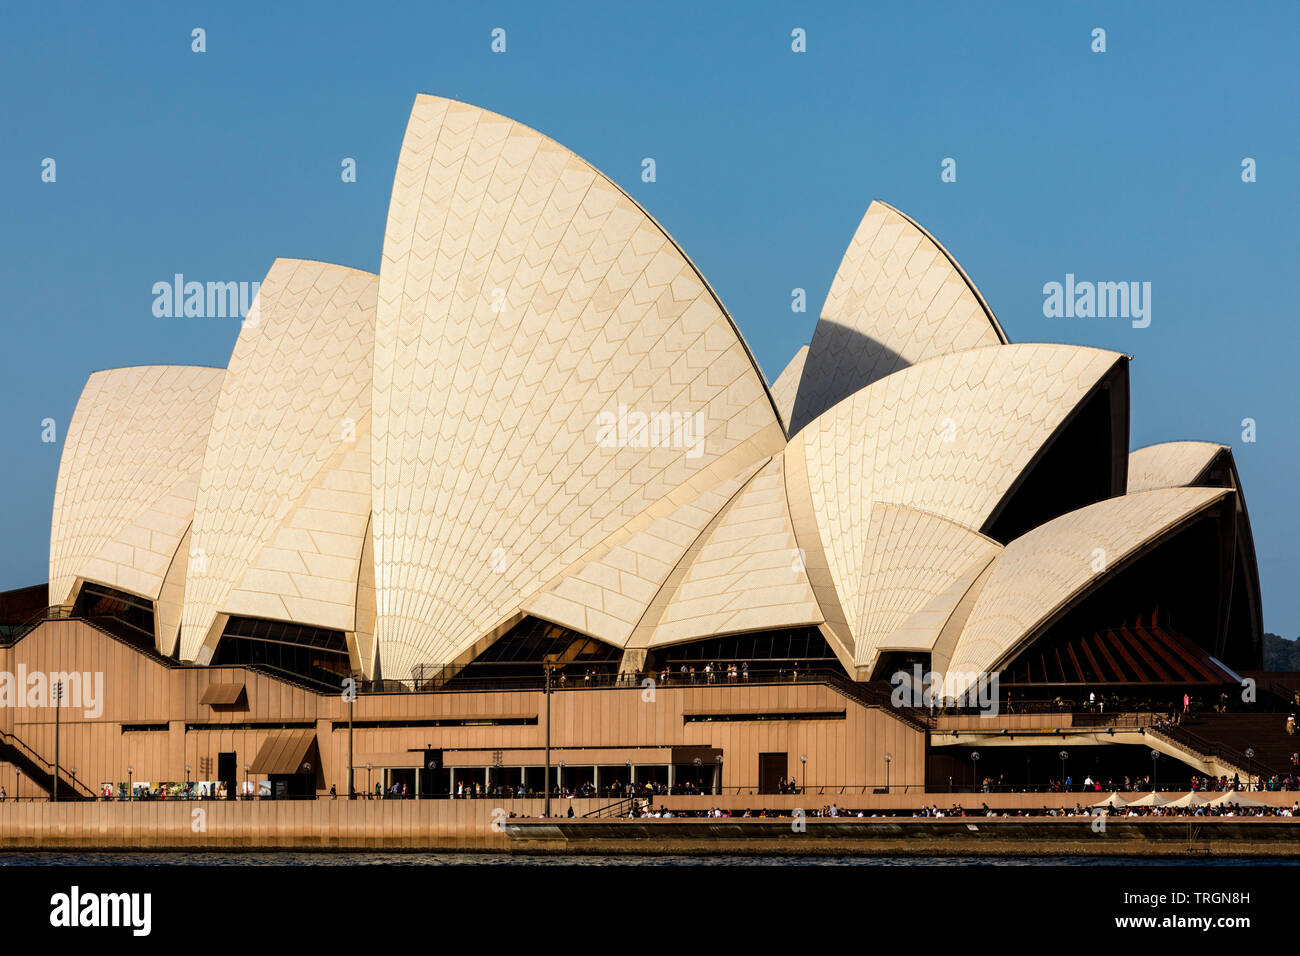 Australia, NSW, Sydney, Sydney Opera House designed by the  Danish architect Jorn Utzon and opened October 1973 Stock Photo